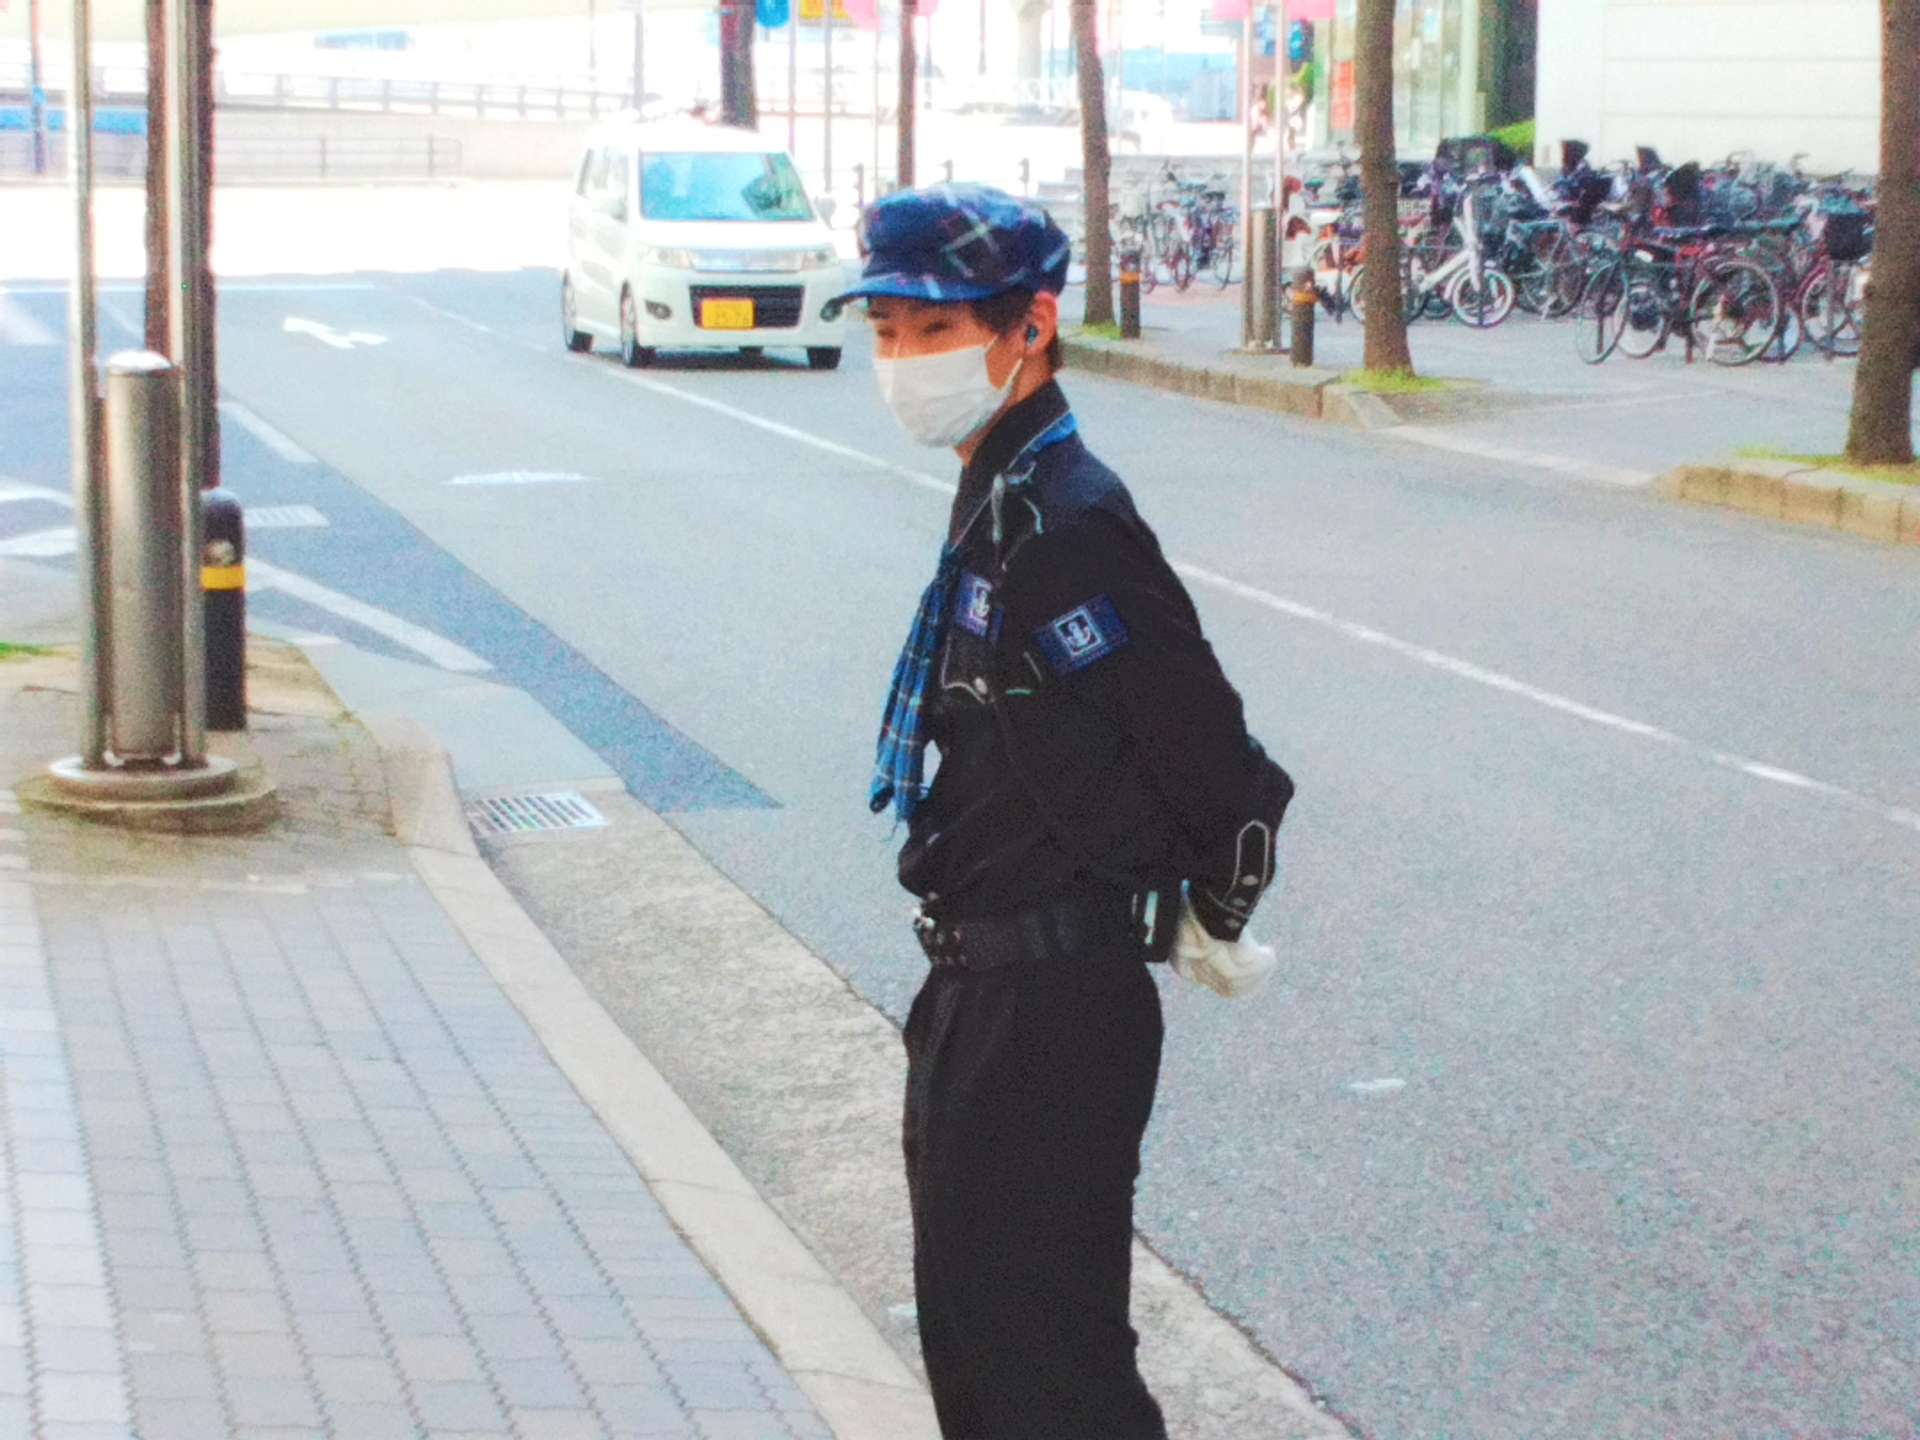 神戸の安心のシンボルを目指す警備会社078ガードのHPが新しくなりました！神戸タータン情報や求人情報、グルメ情報まで幅広くブログ配信します♪